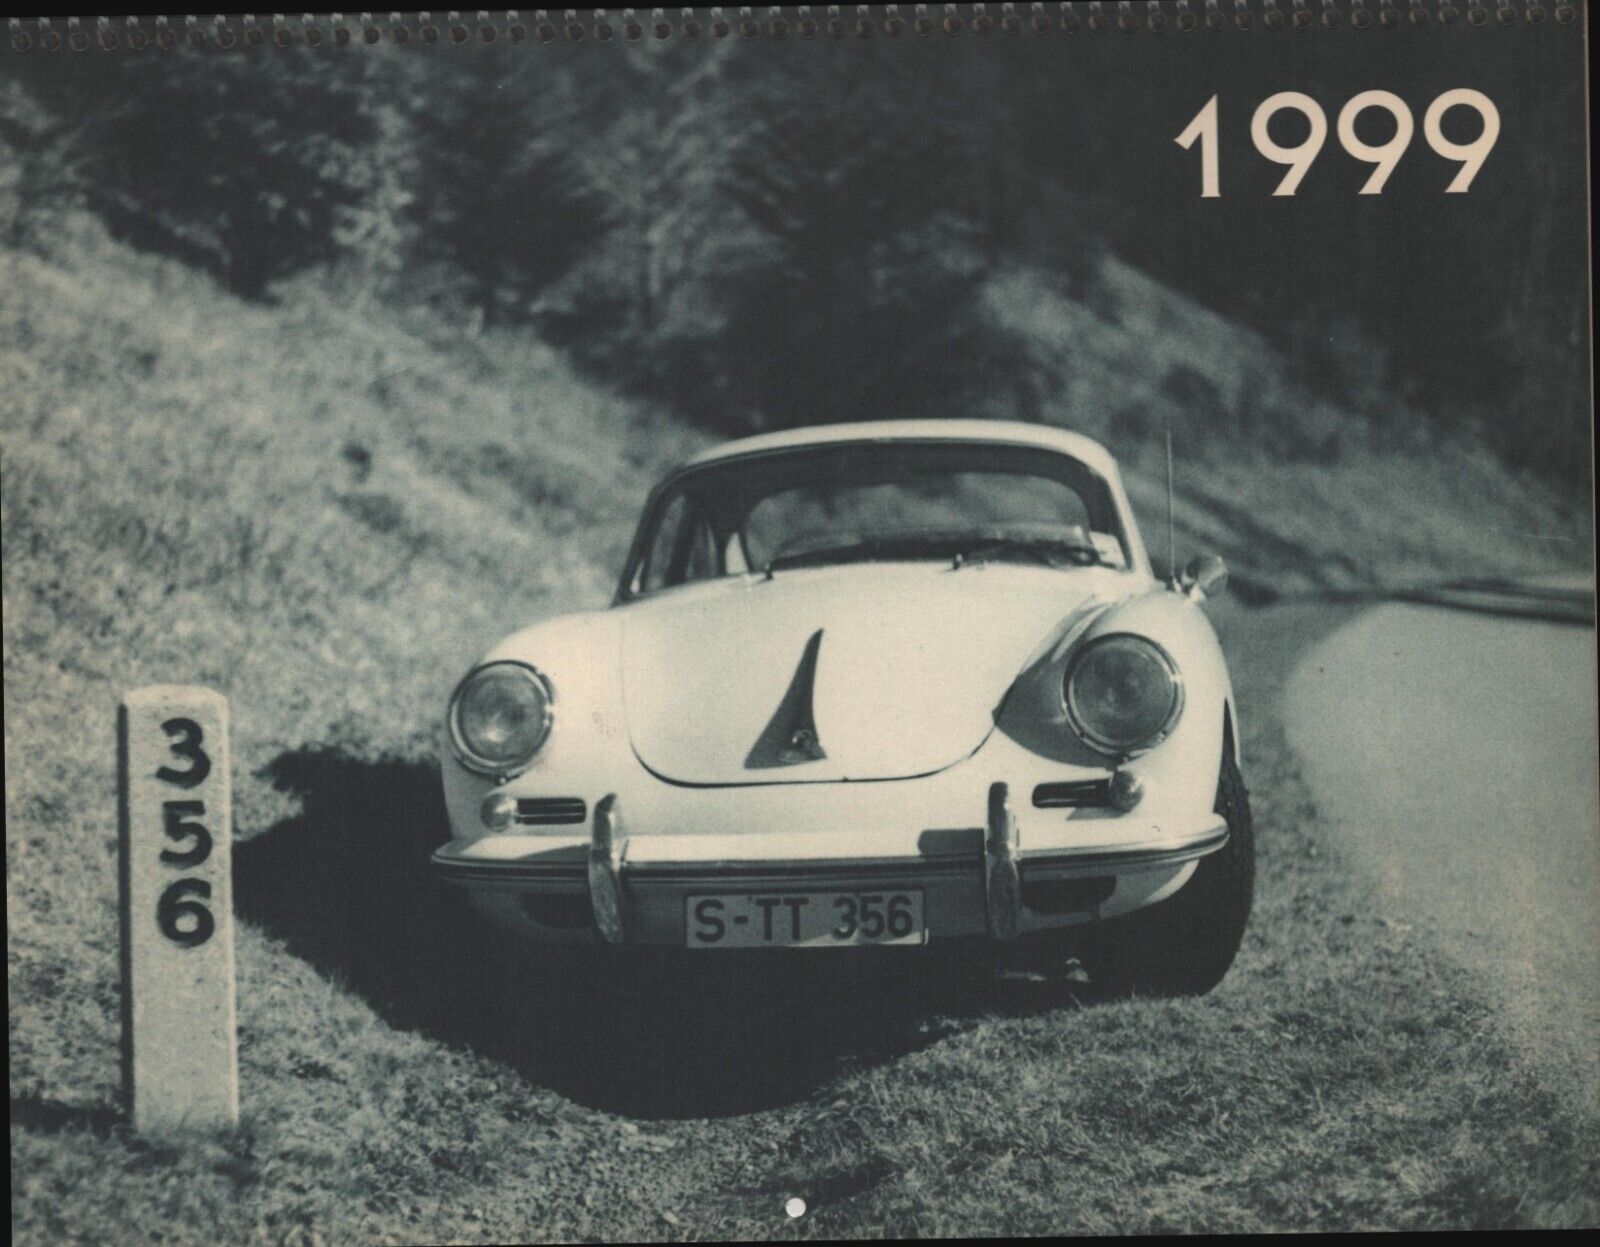 Porsche - 1999 Calendar - Porsche - Three Fifty Six, Inc.